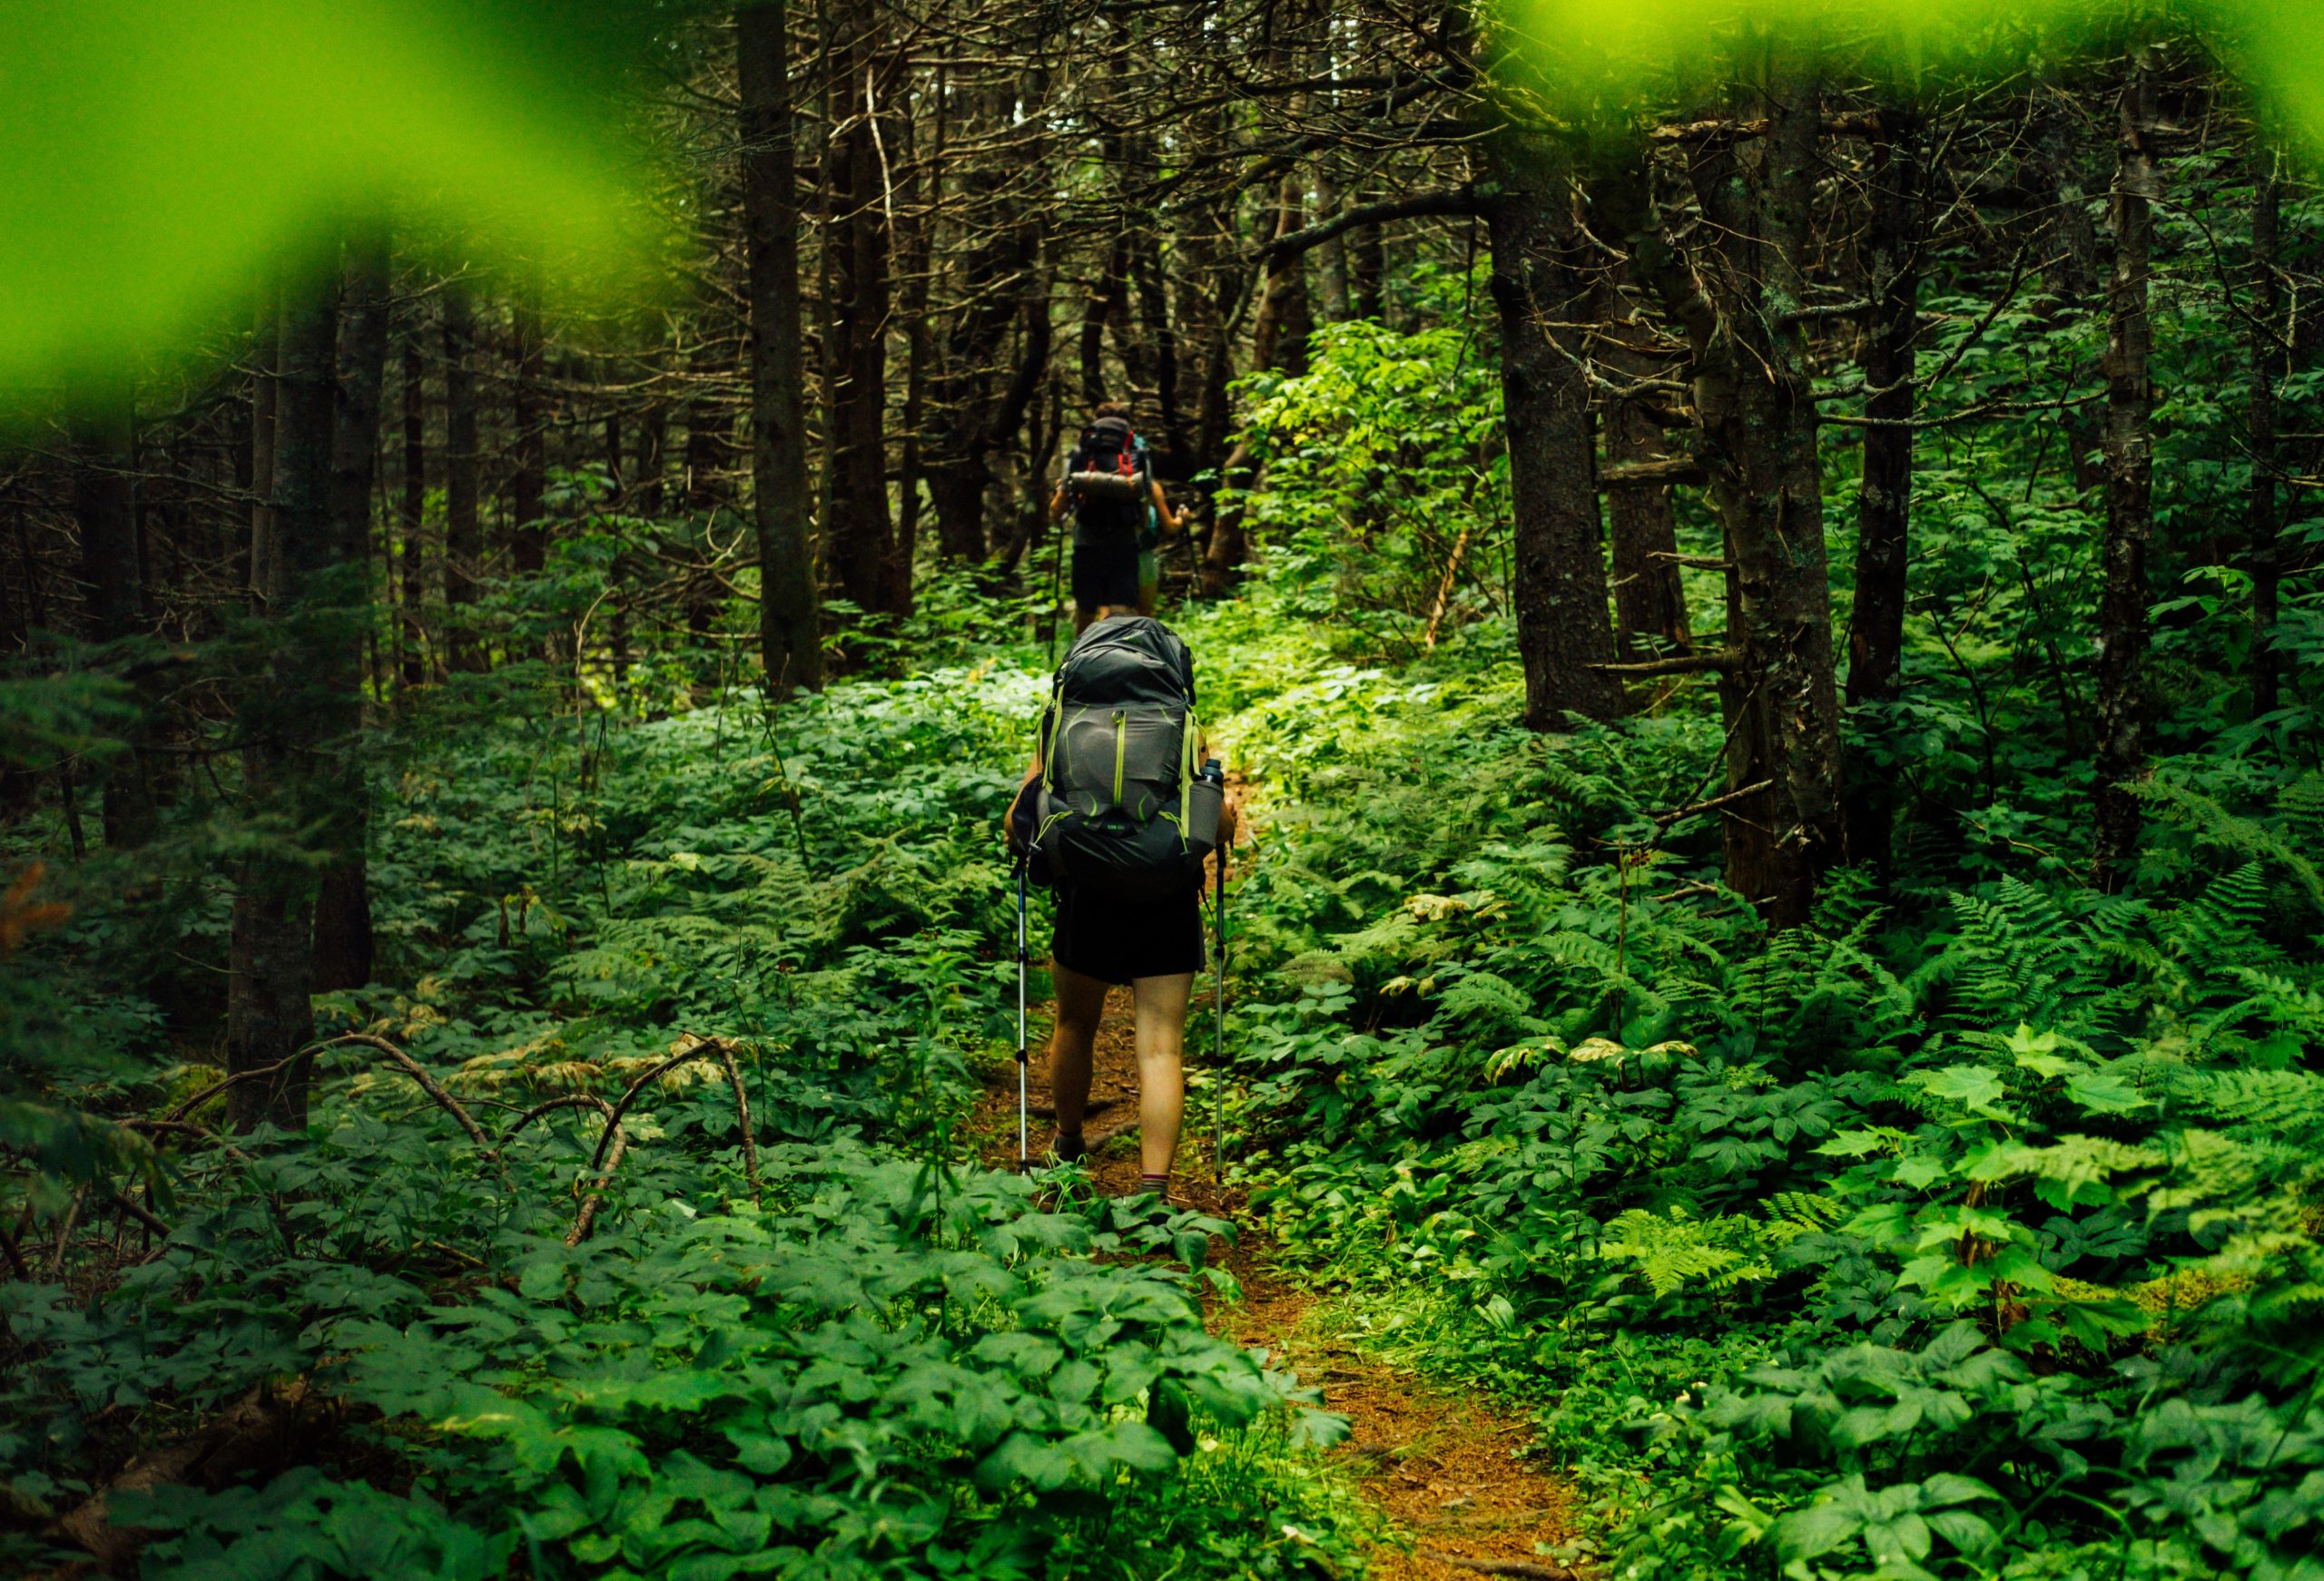 randonneurs en forêt qui profitent des bienfaits de la marche